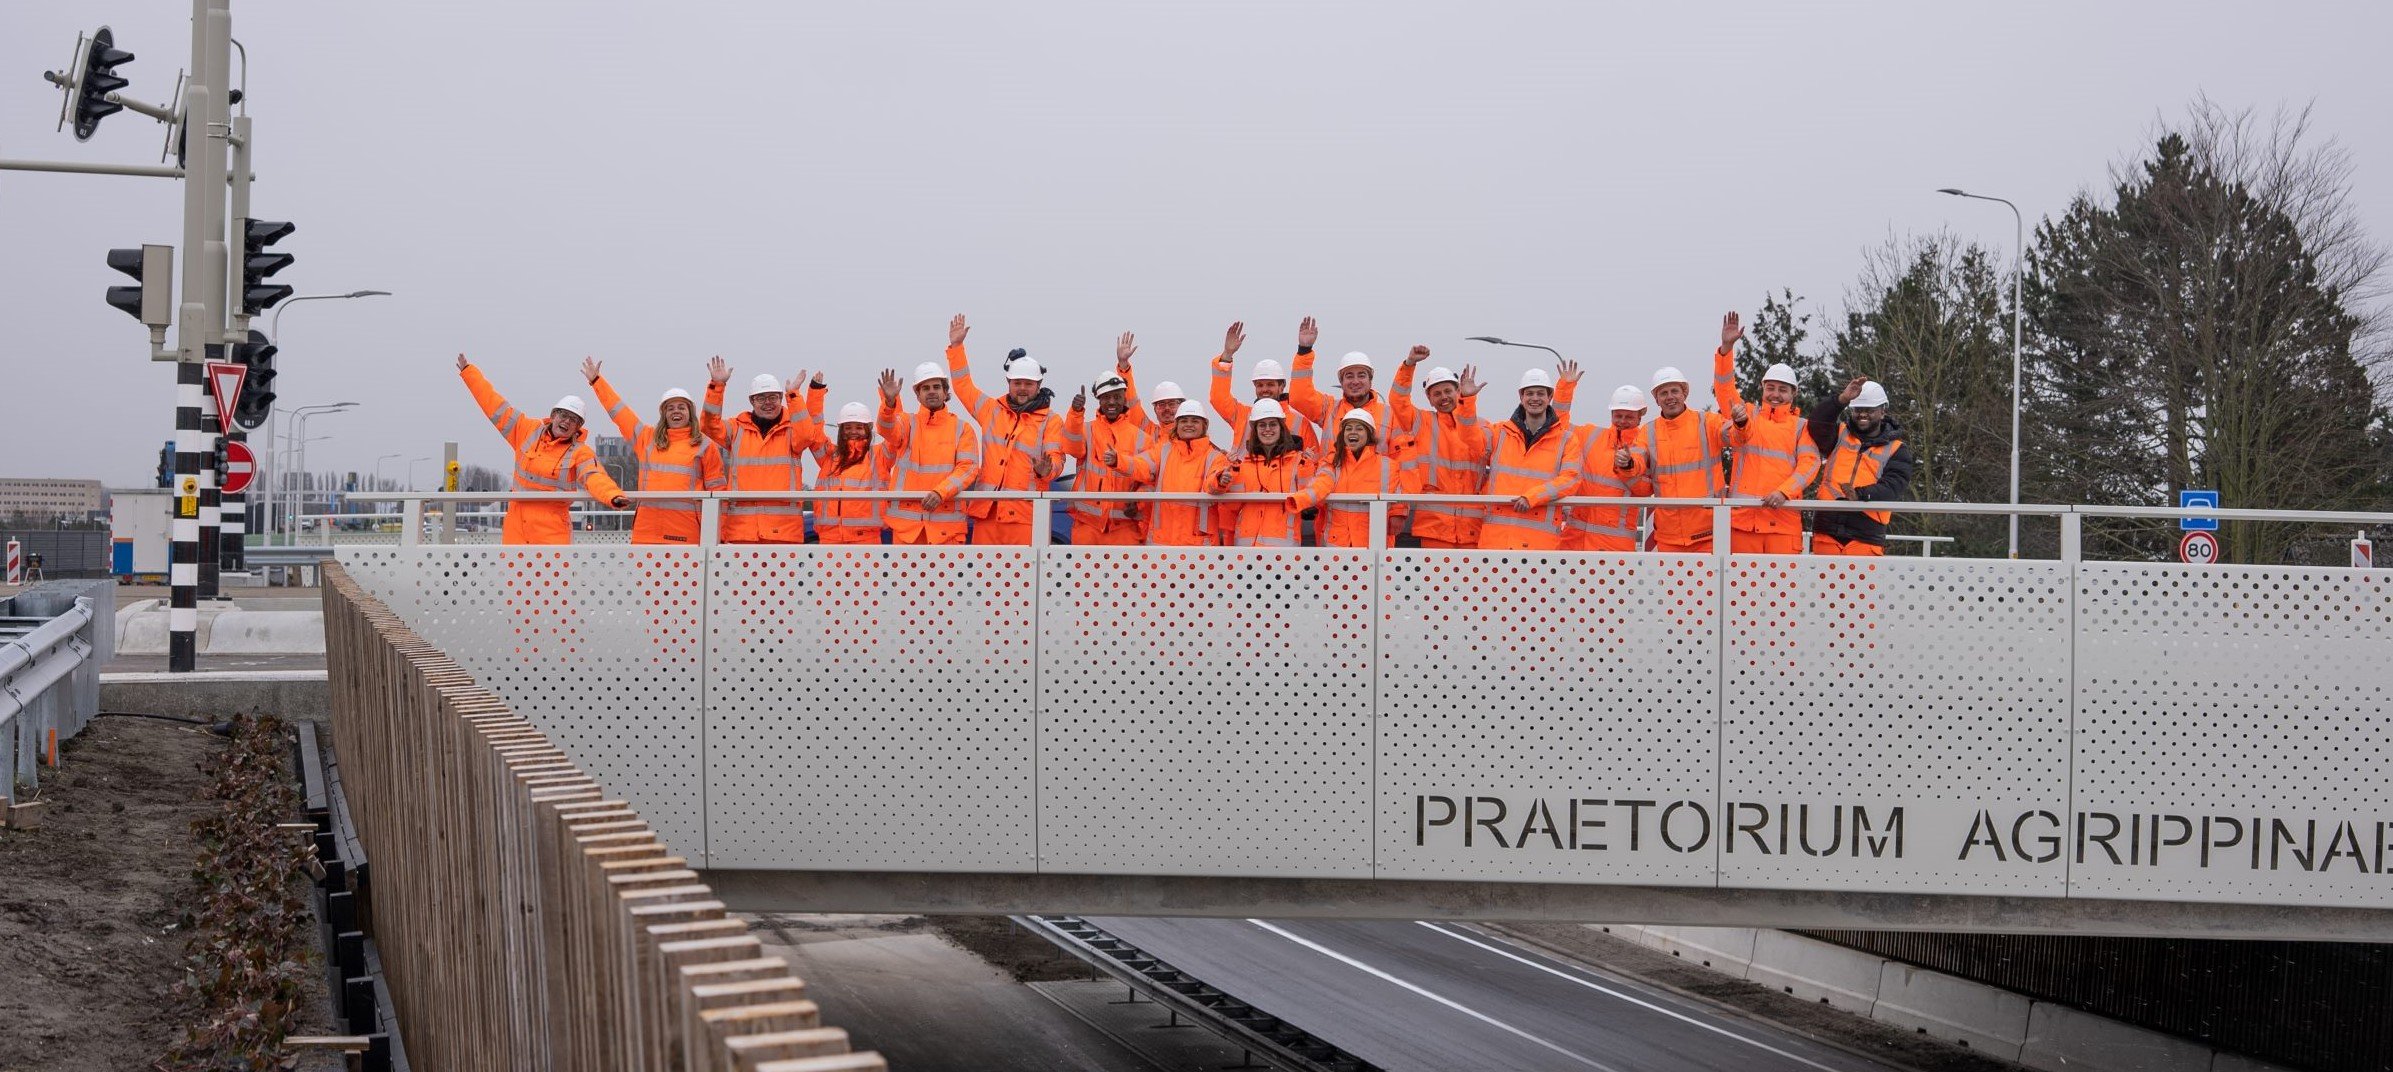 SWARCO collega's zwaaien vanaf een project brug naar de camera